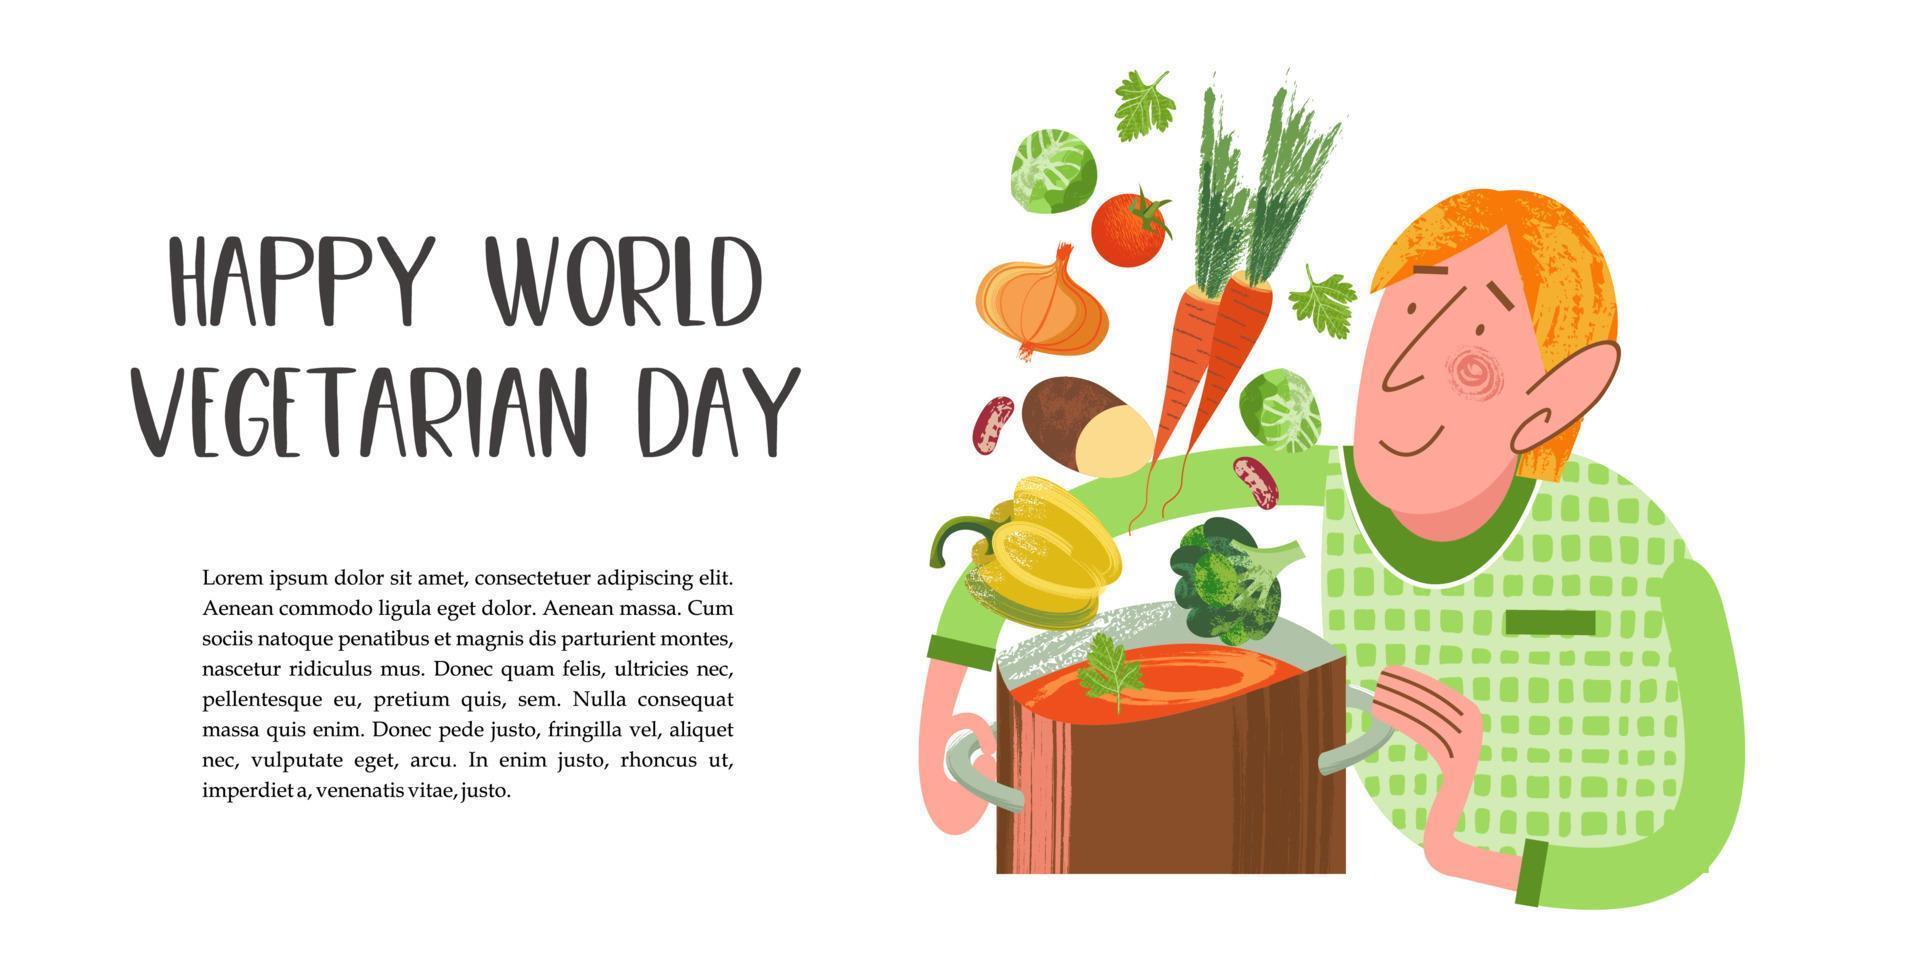 buona giornata mondiale vegetariana. illustrazione vettoriale con texture uniche disegnate a mano.